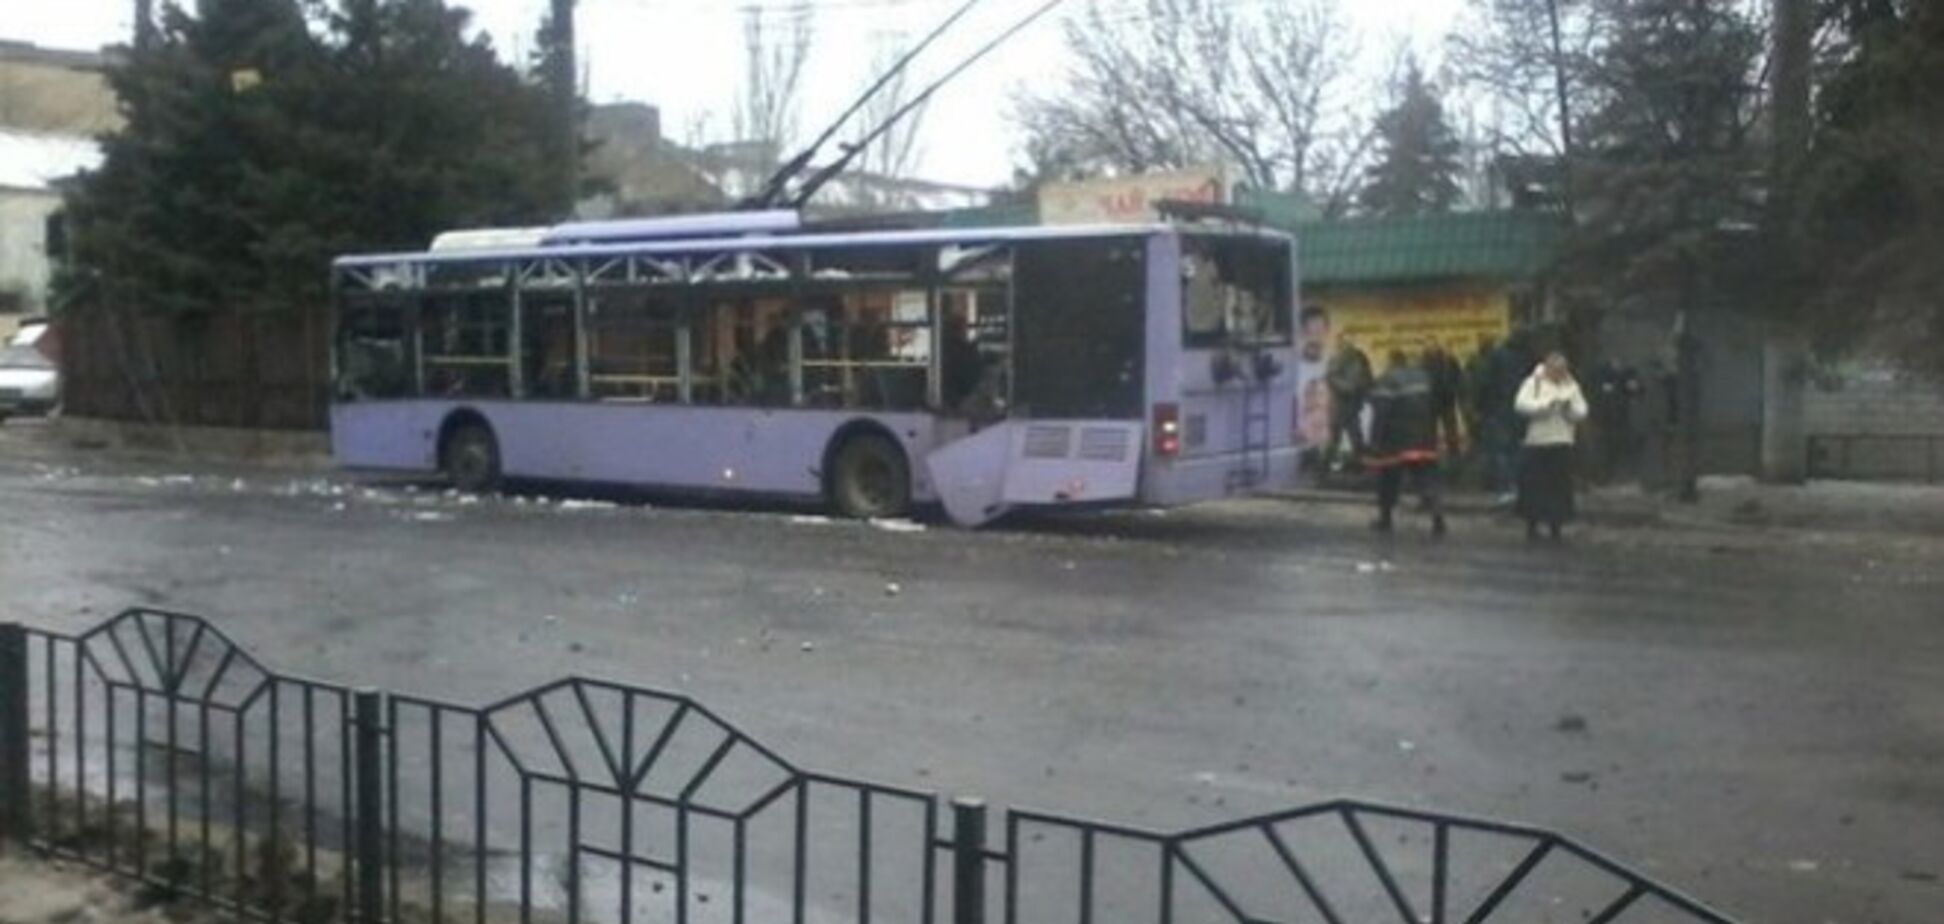 Прокуратура квалифицировала обстрел троллейбуса в Донецке как теракт, обстрел района продолжается